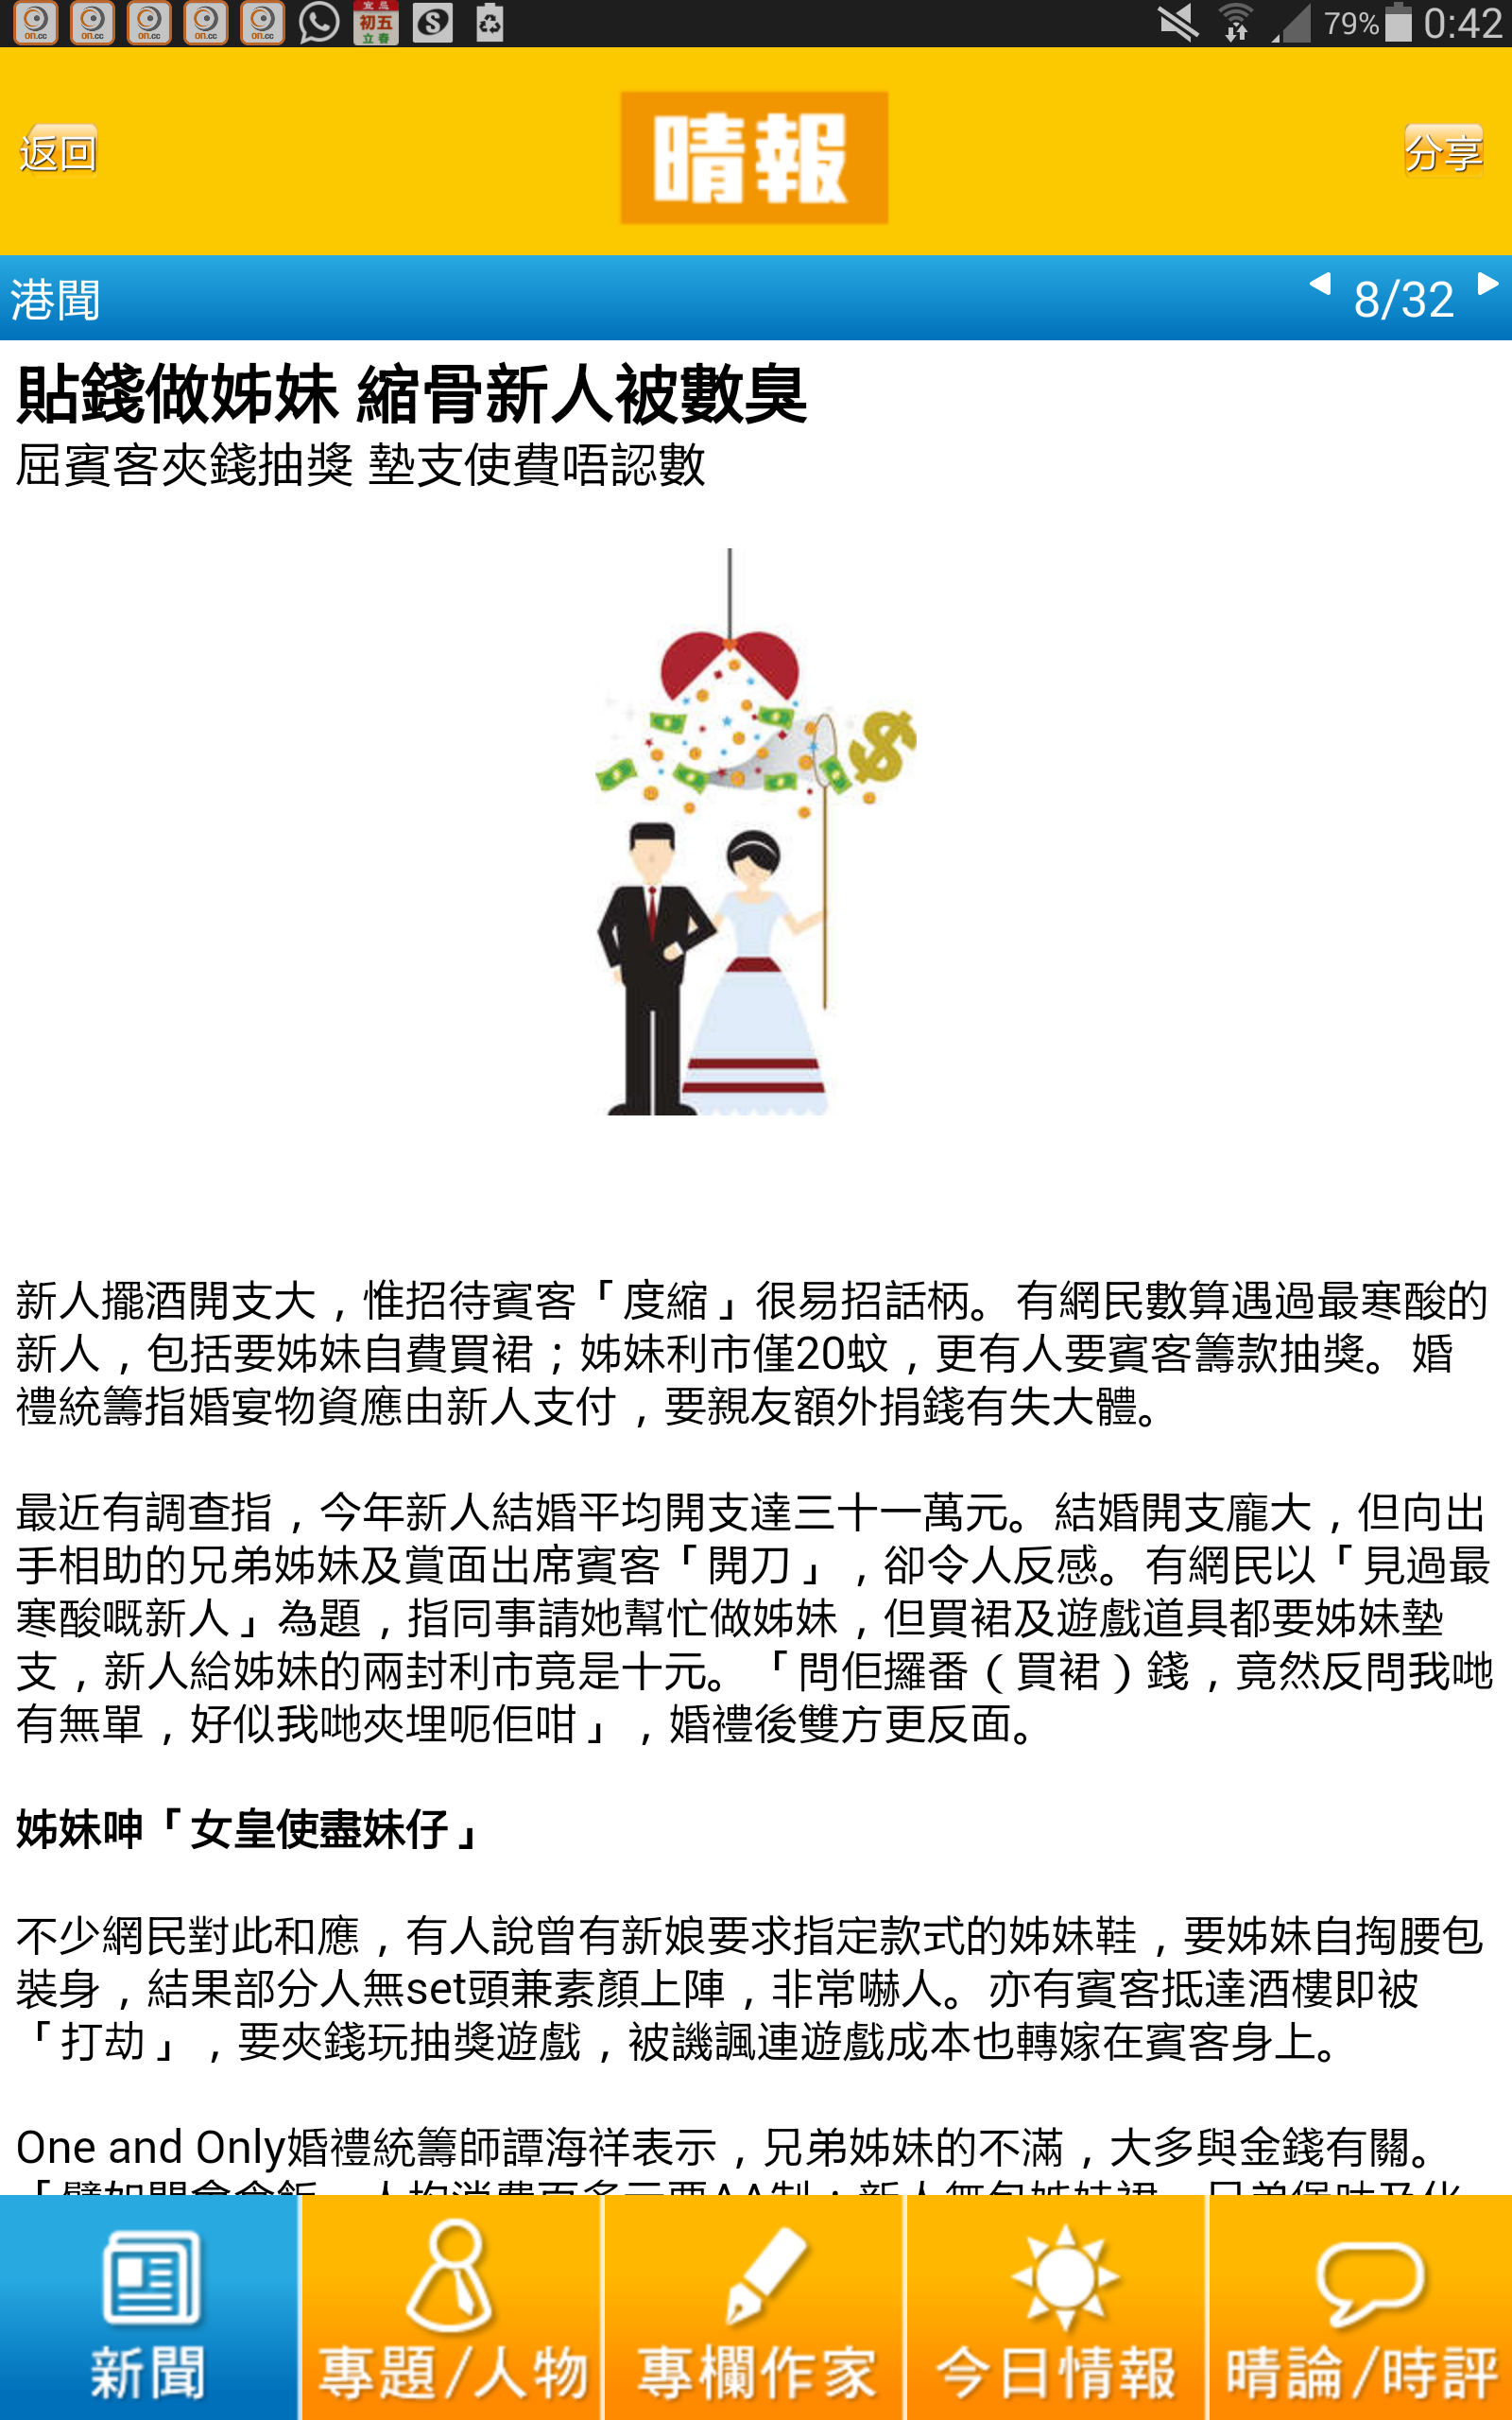 婚禮統籌師譚海祥Billy Tam之媒體報導: 貼錢做姊妹 縮骨新人被數臭